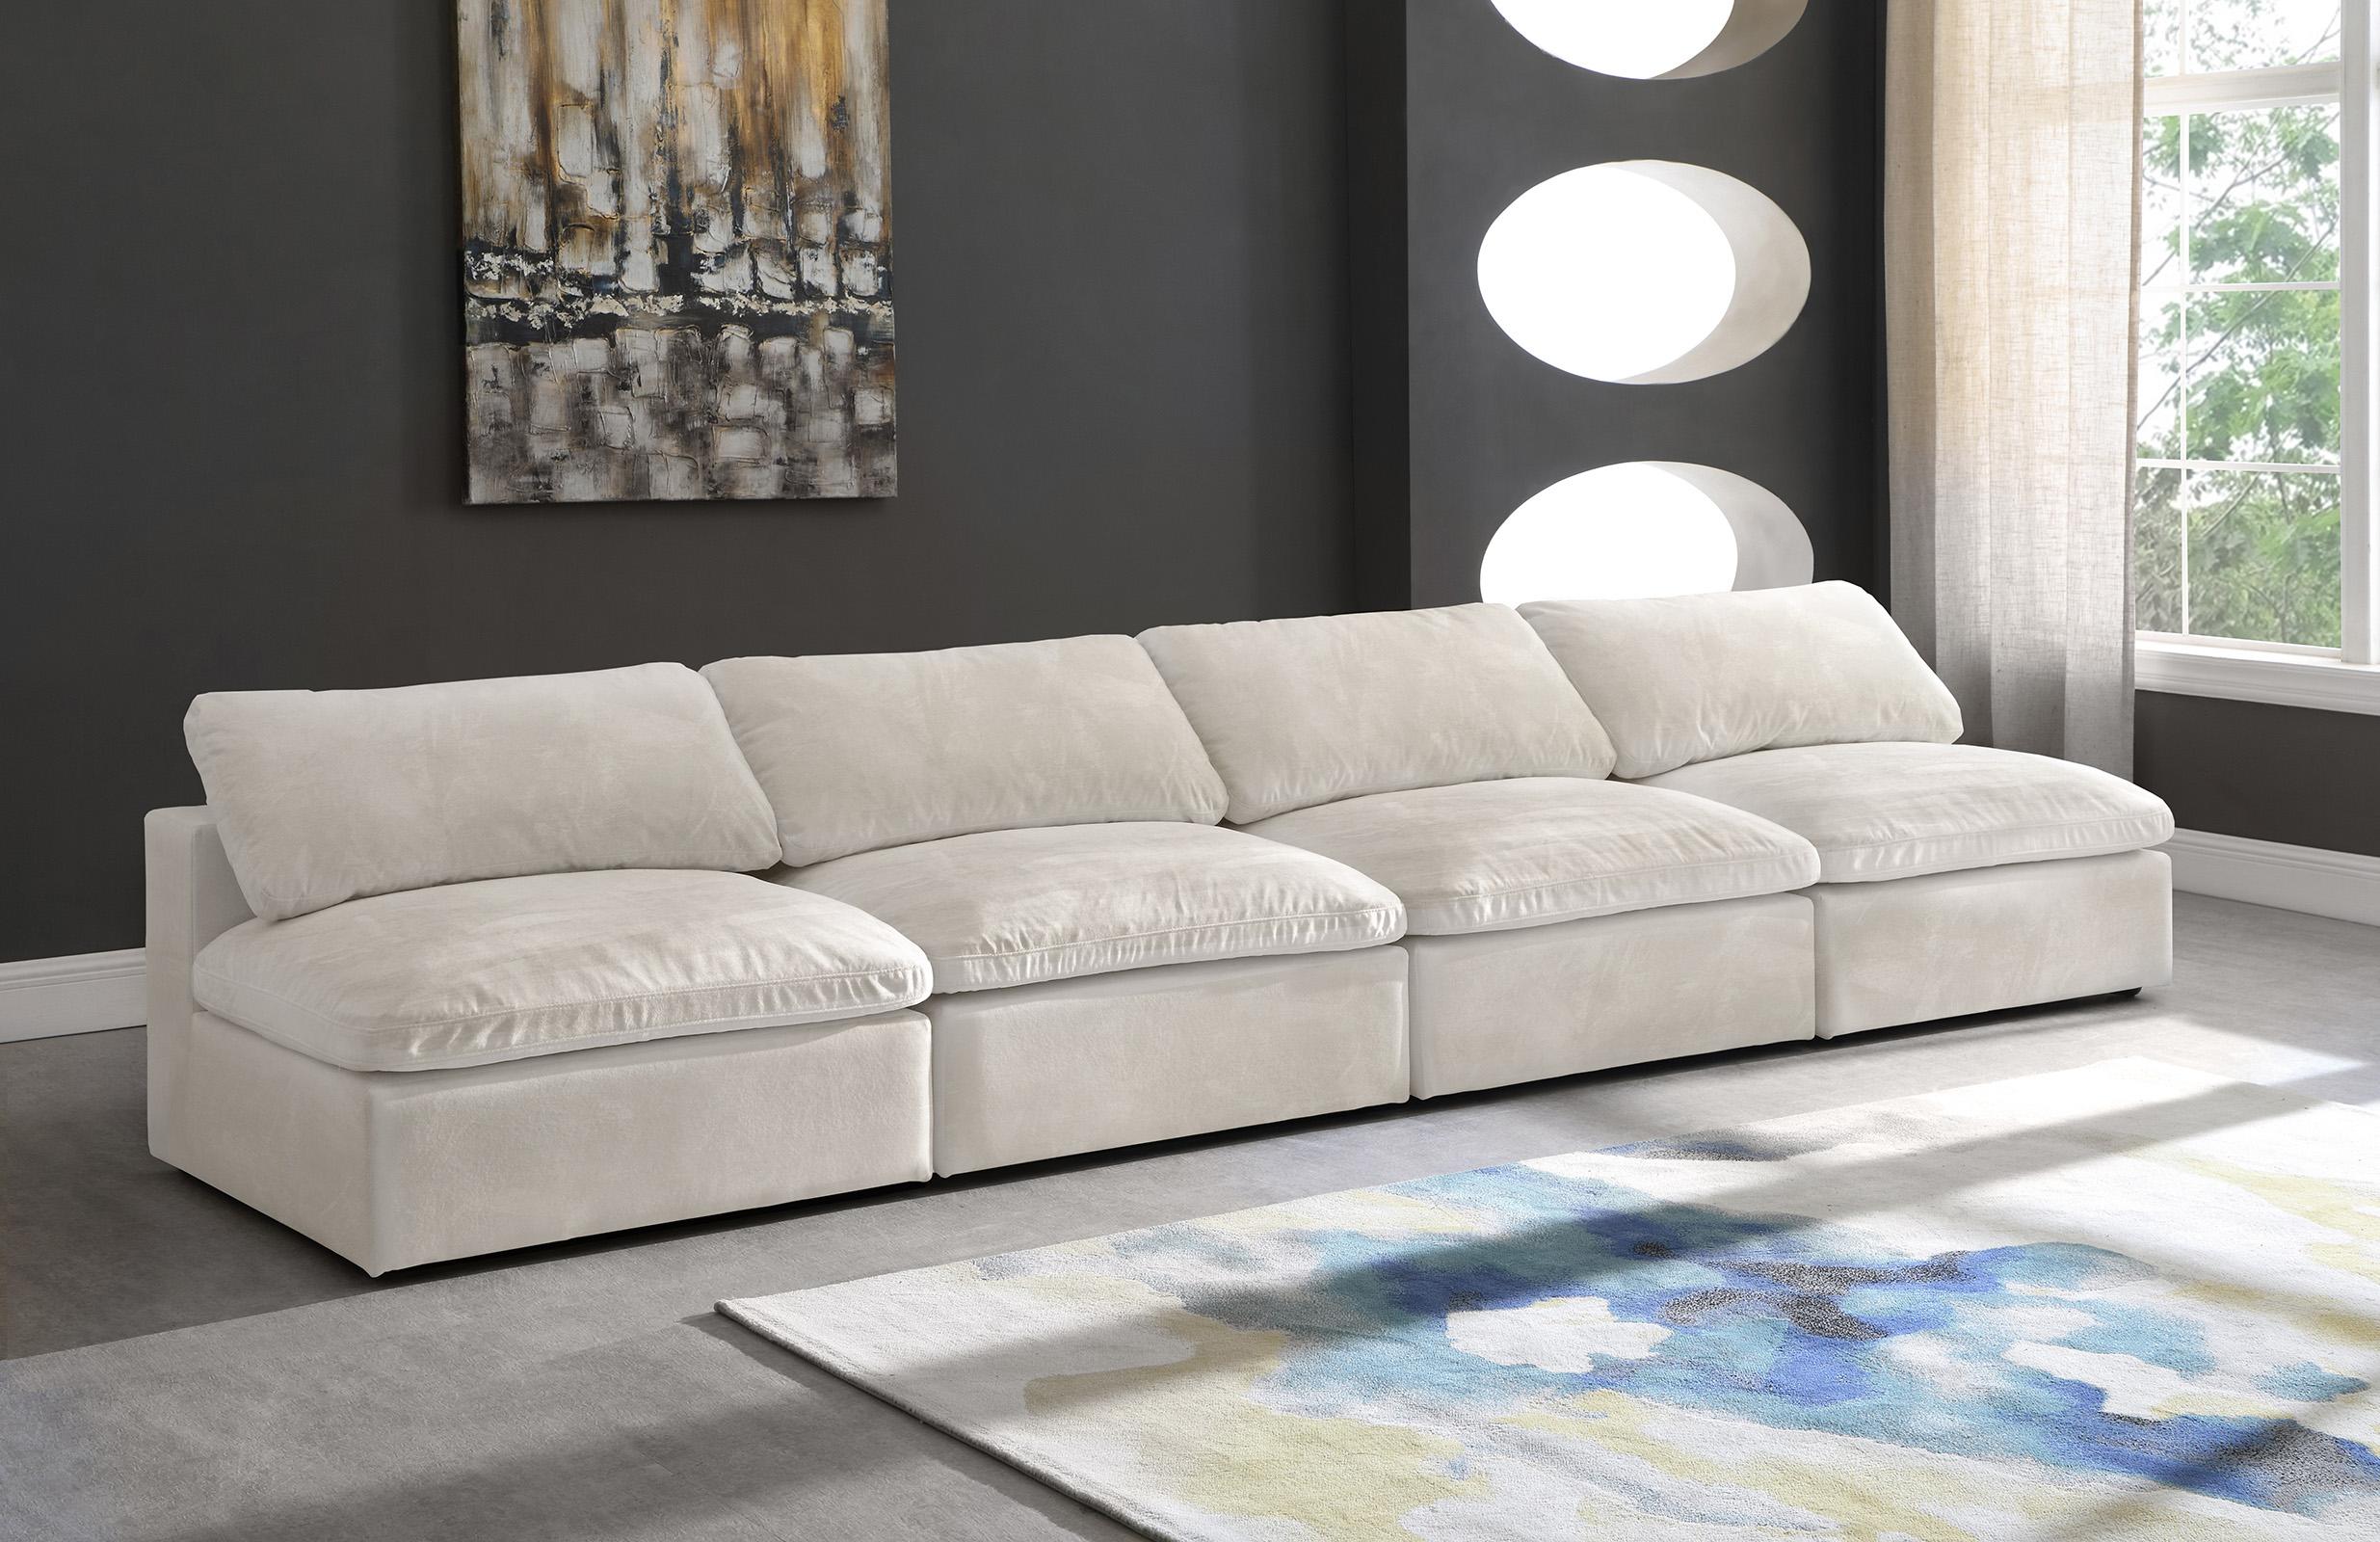 

    
Meridian Furniture 634Cream-S156 Modular Sofa Cream 634Cream-S156
